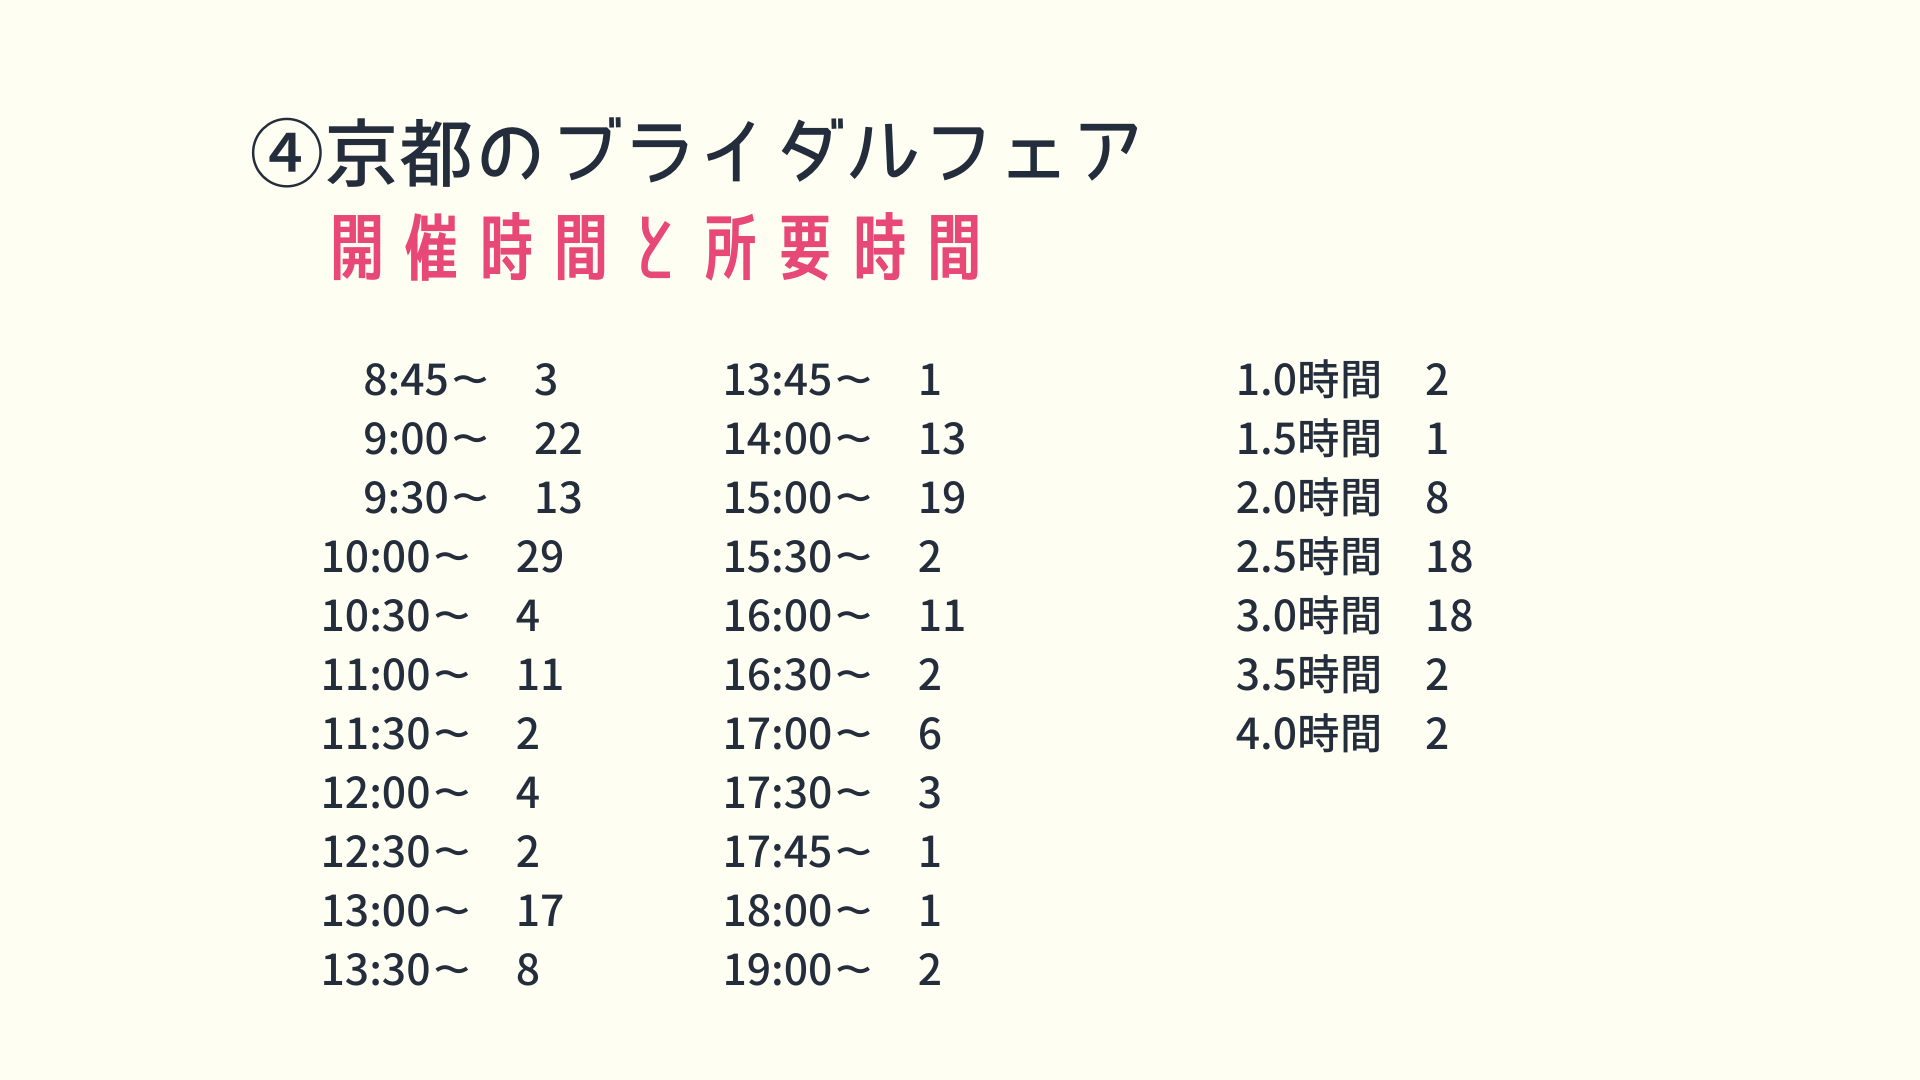 京都のブライダルフェア開催時間と所要時間